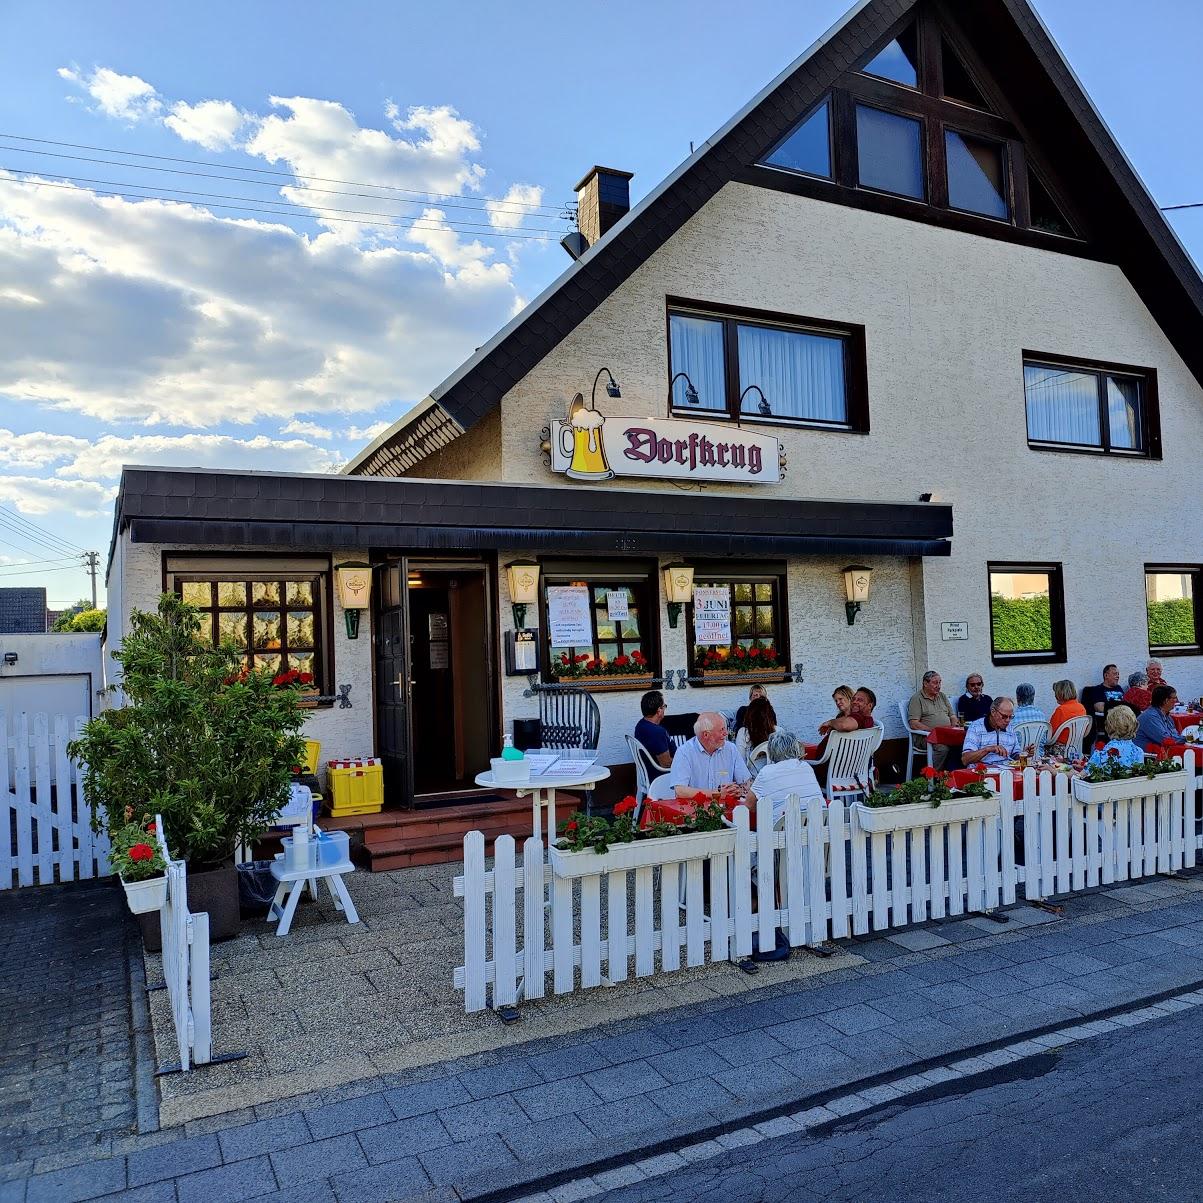 Restaurant "Dorfkrug Inh. L. Körner" in Sankt Augustin